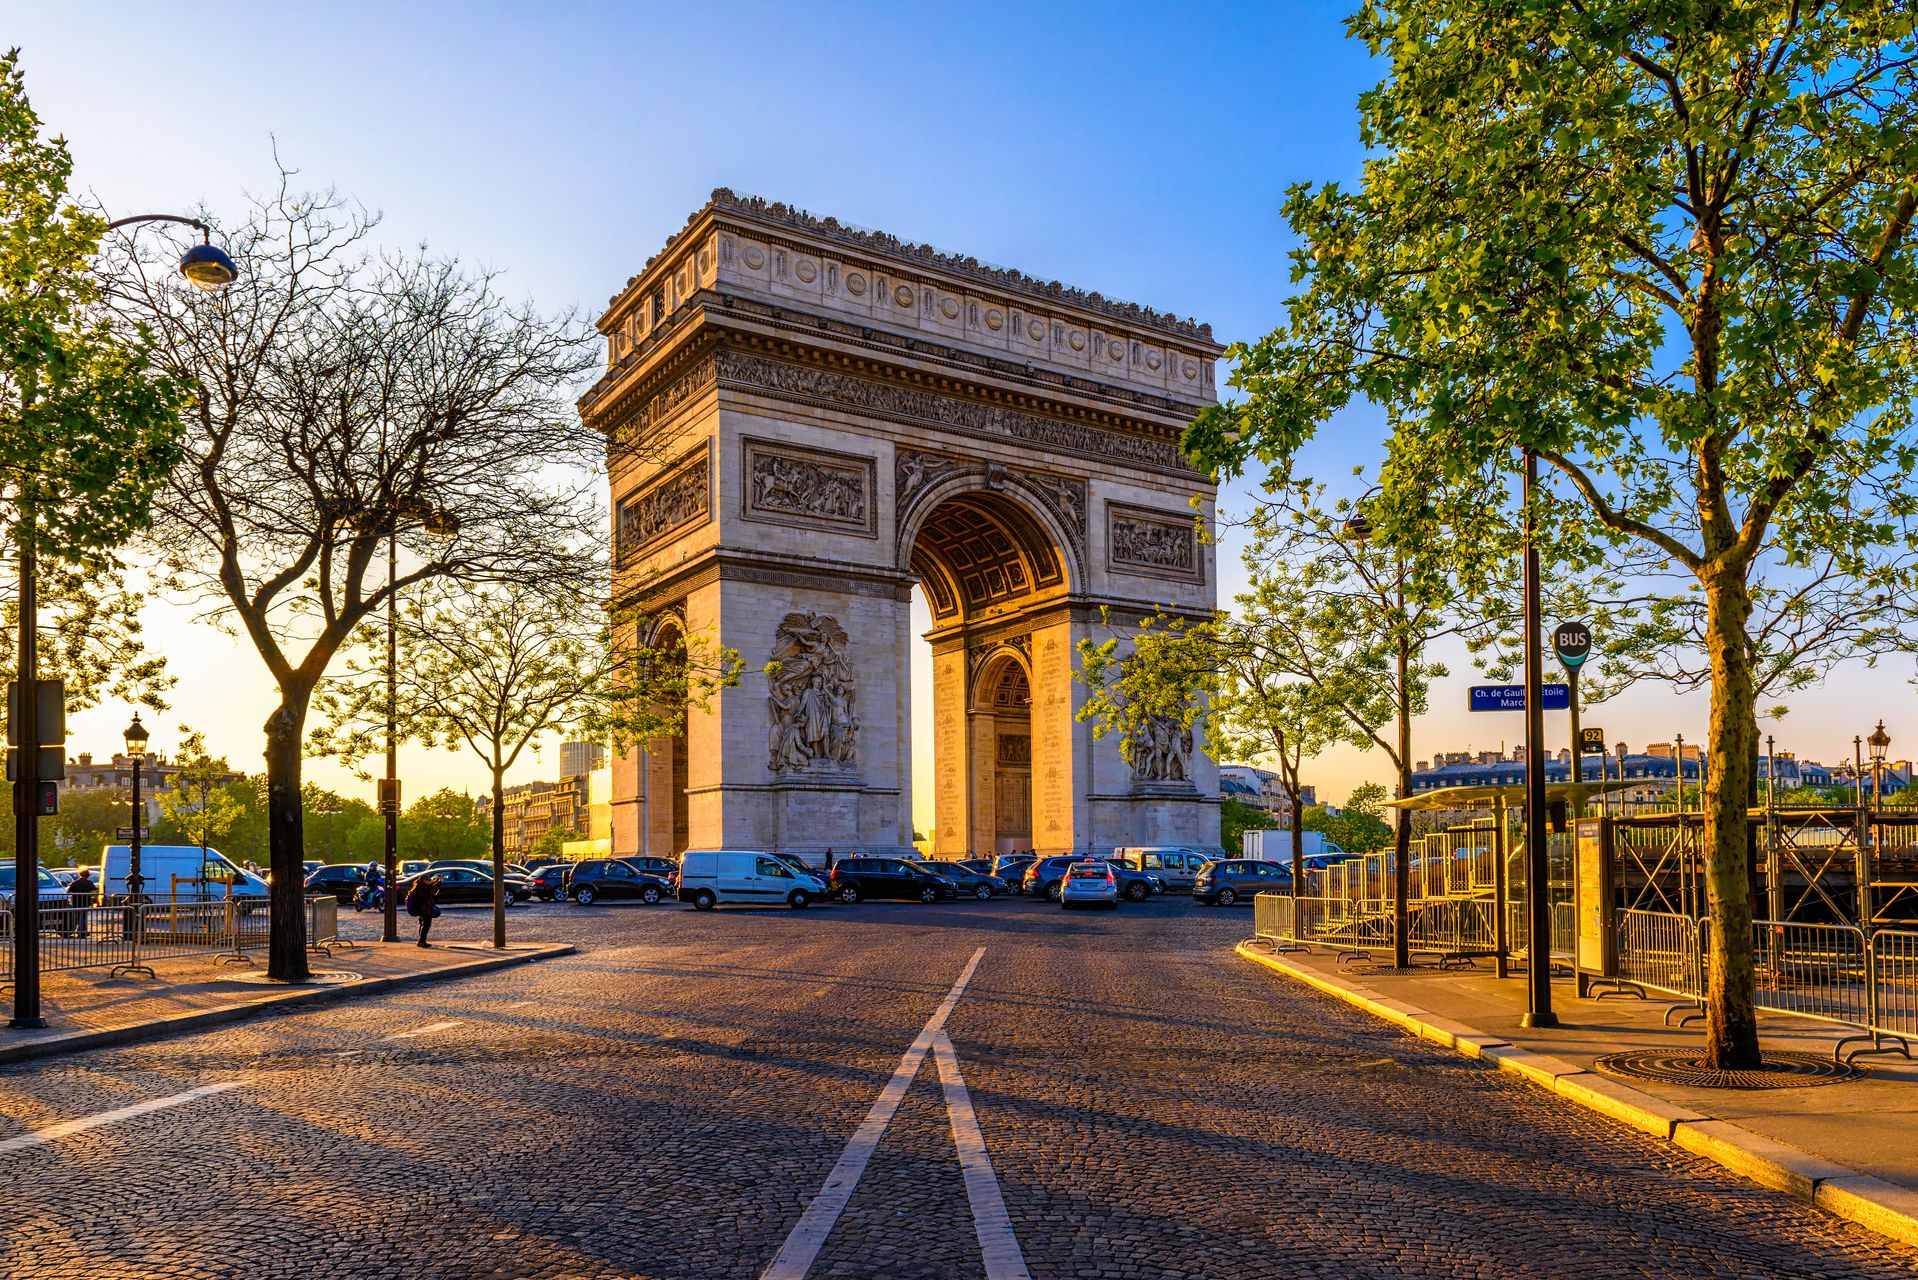 Paris: Arc de Triomphe